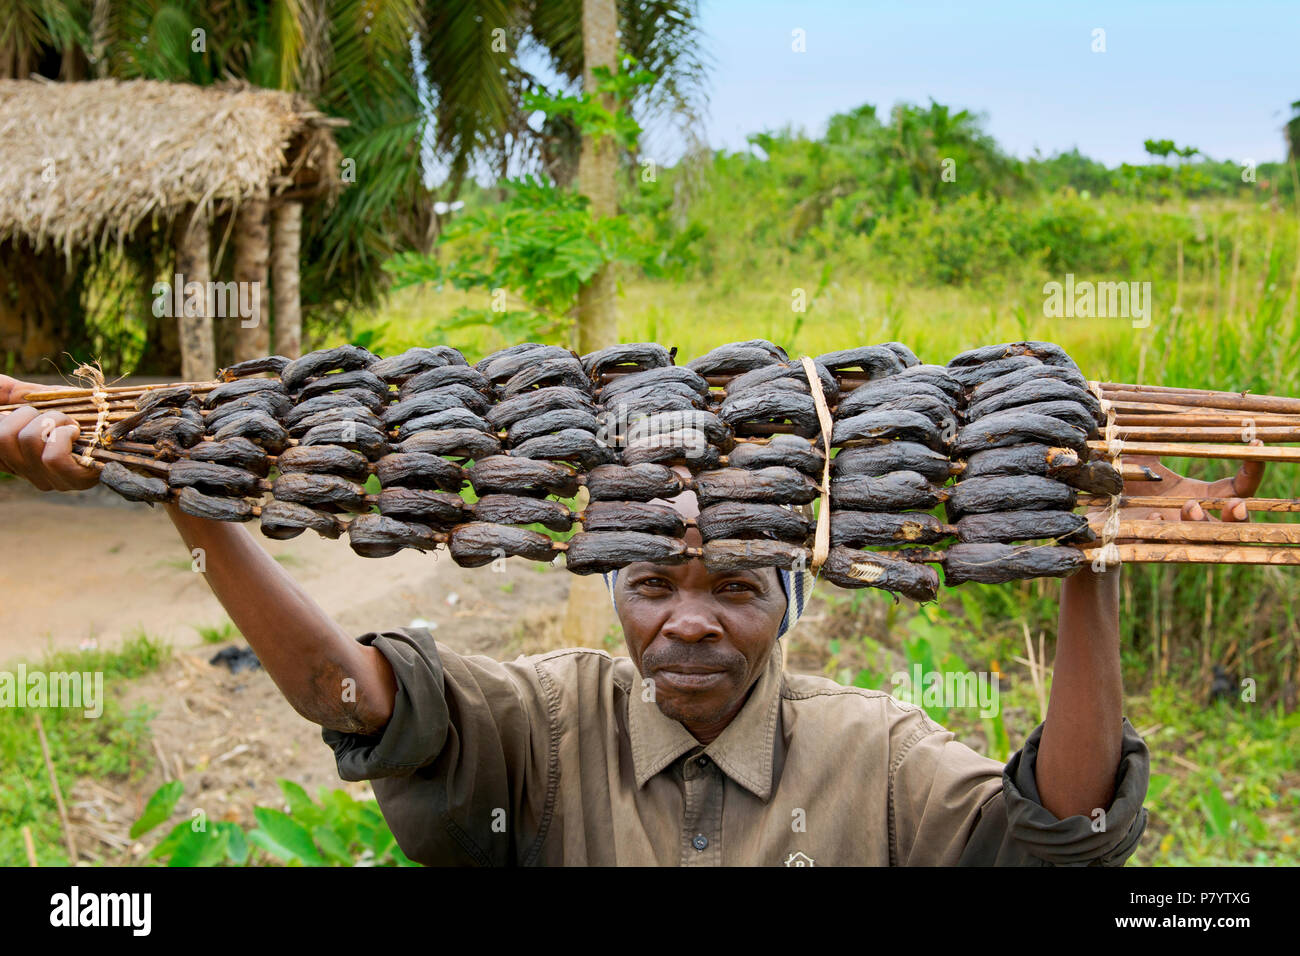 Pescados ahumados, hombre de Uganda la venta de pescado en la carretera, vendedor ambulante, Uganda, África Oriental Foto de stock